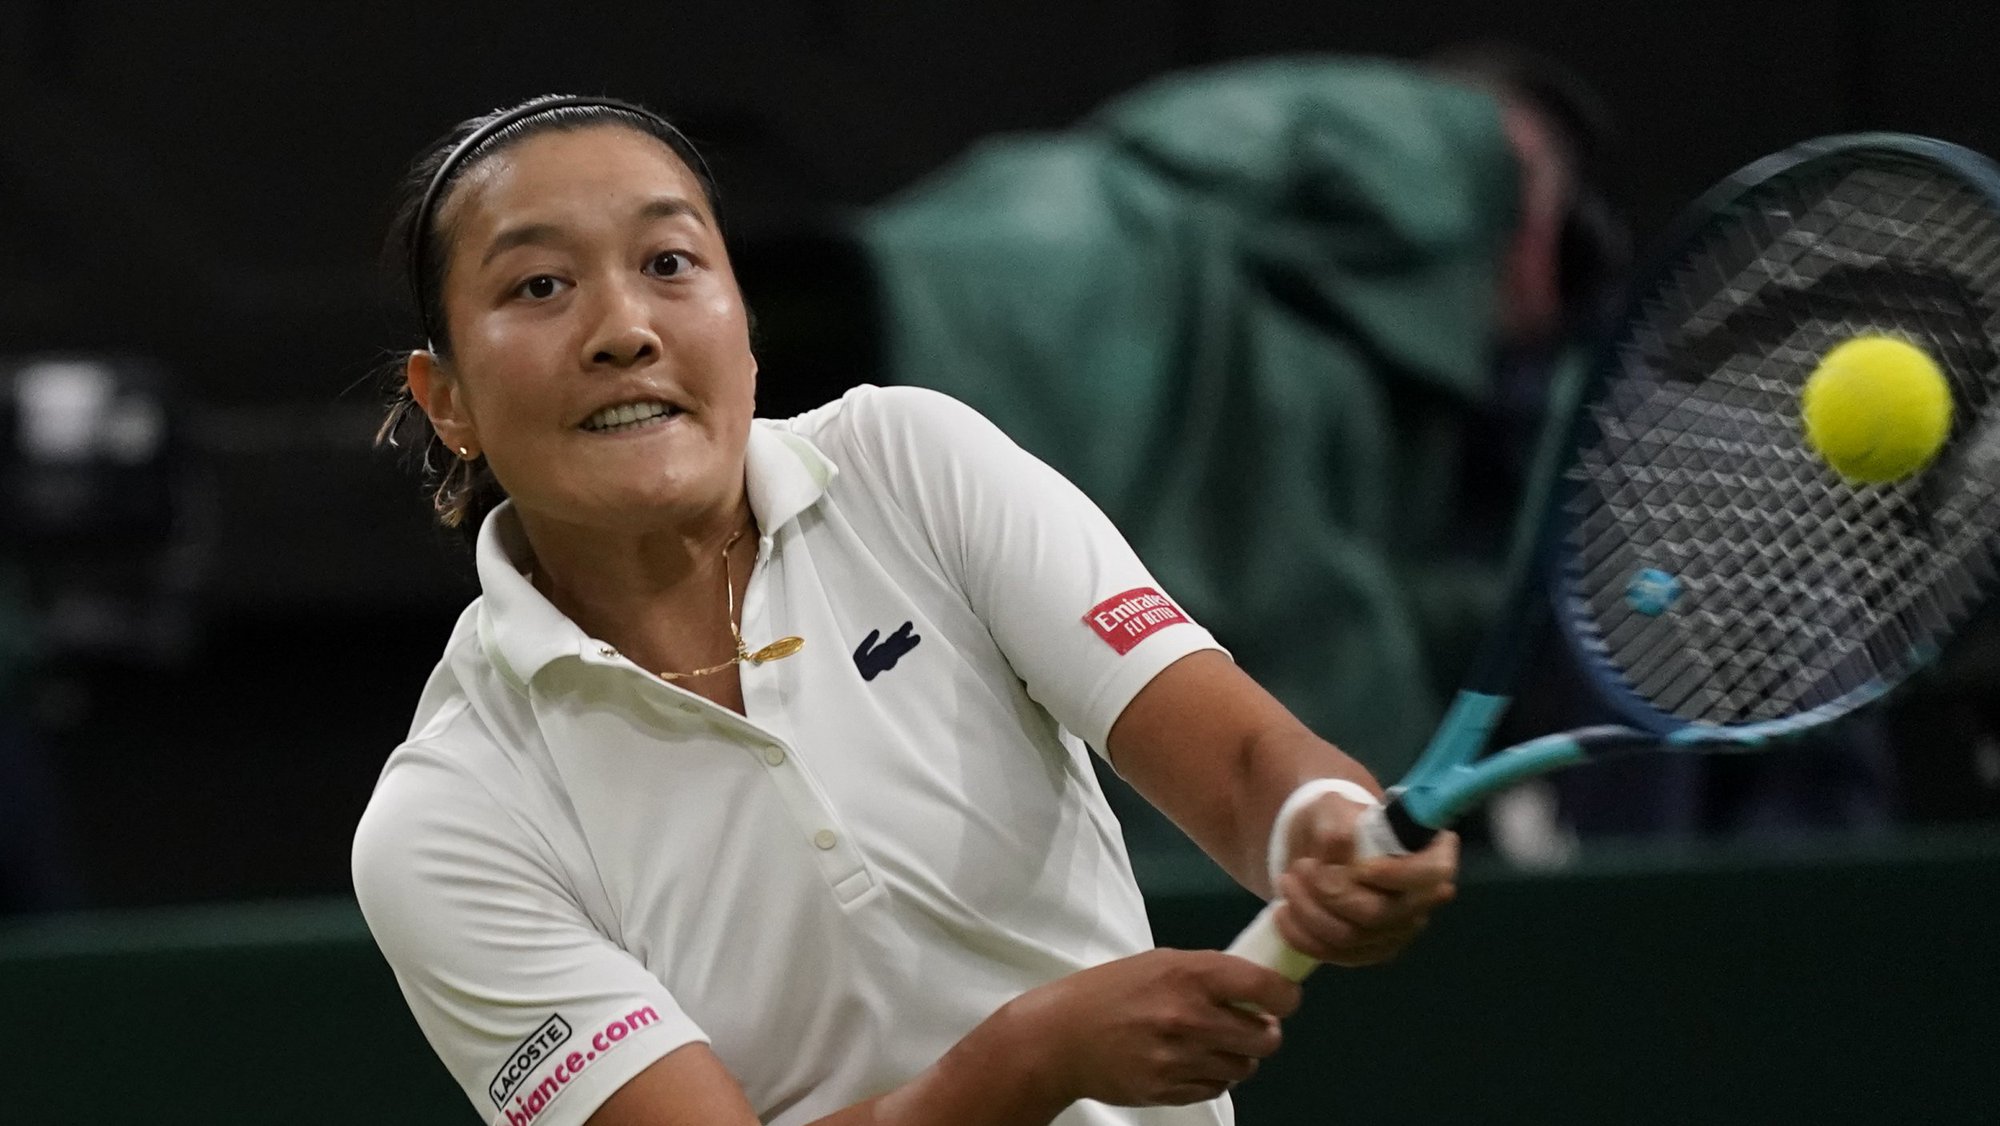 Harmony Tan - Tay vợt gốc Việt đánh bại Serena Williams là ai? - Ảnh 2.